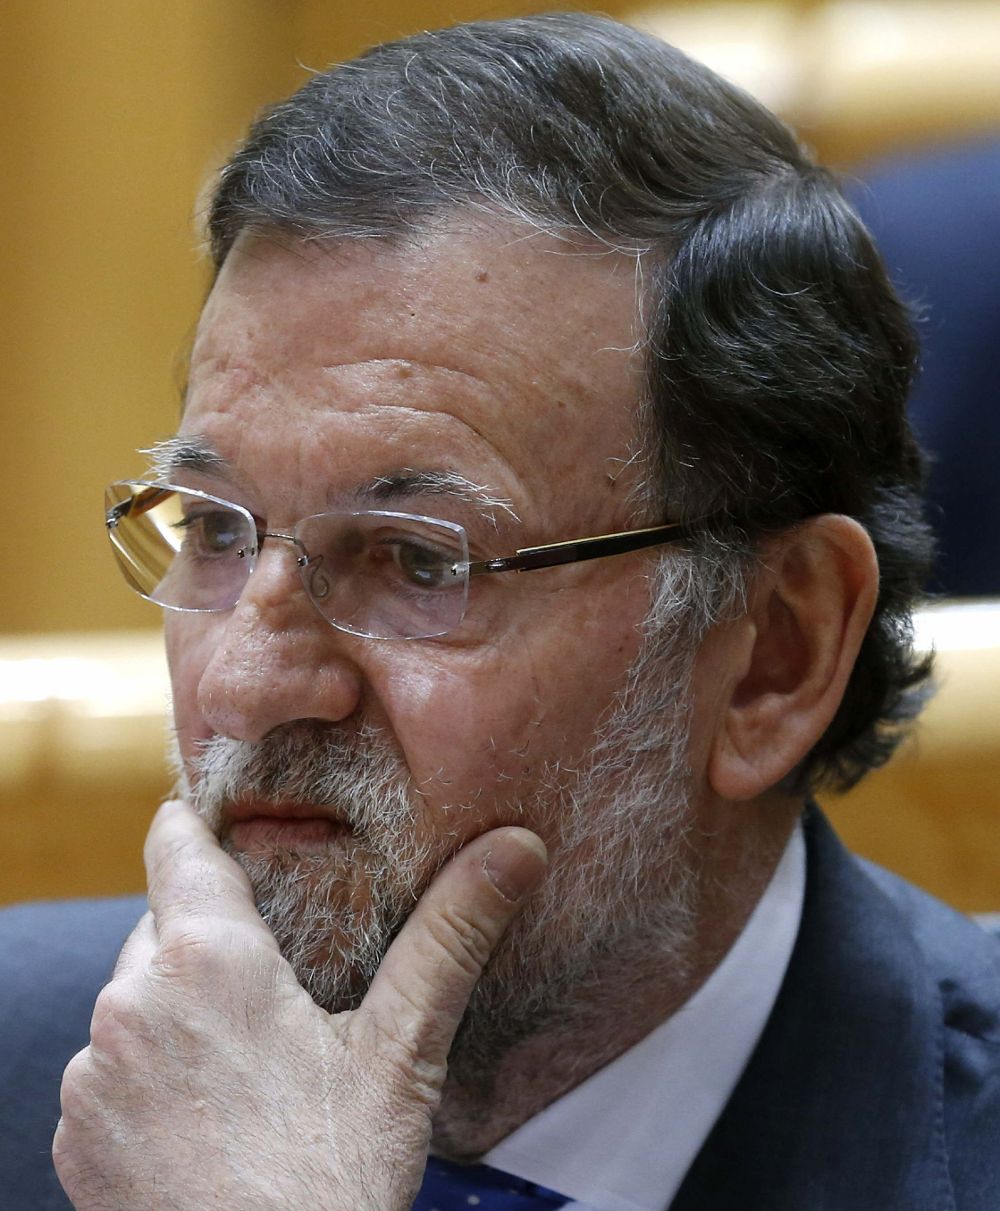 El presidente del Gobierno, Mariano Rajoy, durante el pleno del Senado que se celebra hoy en Madrid.